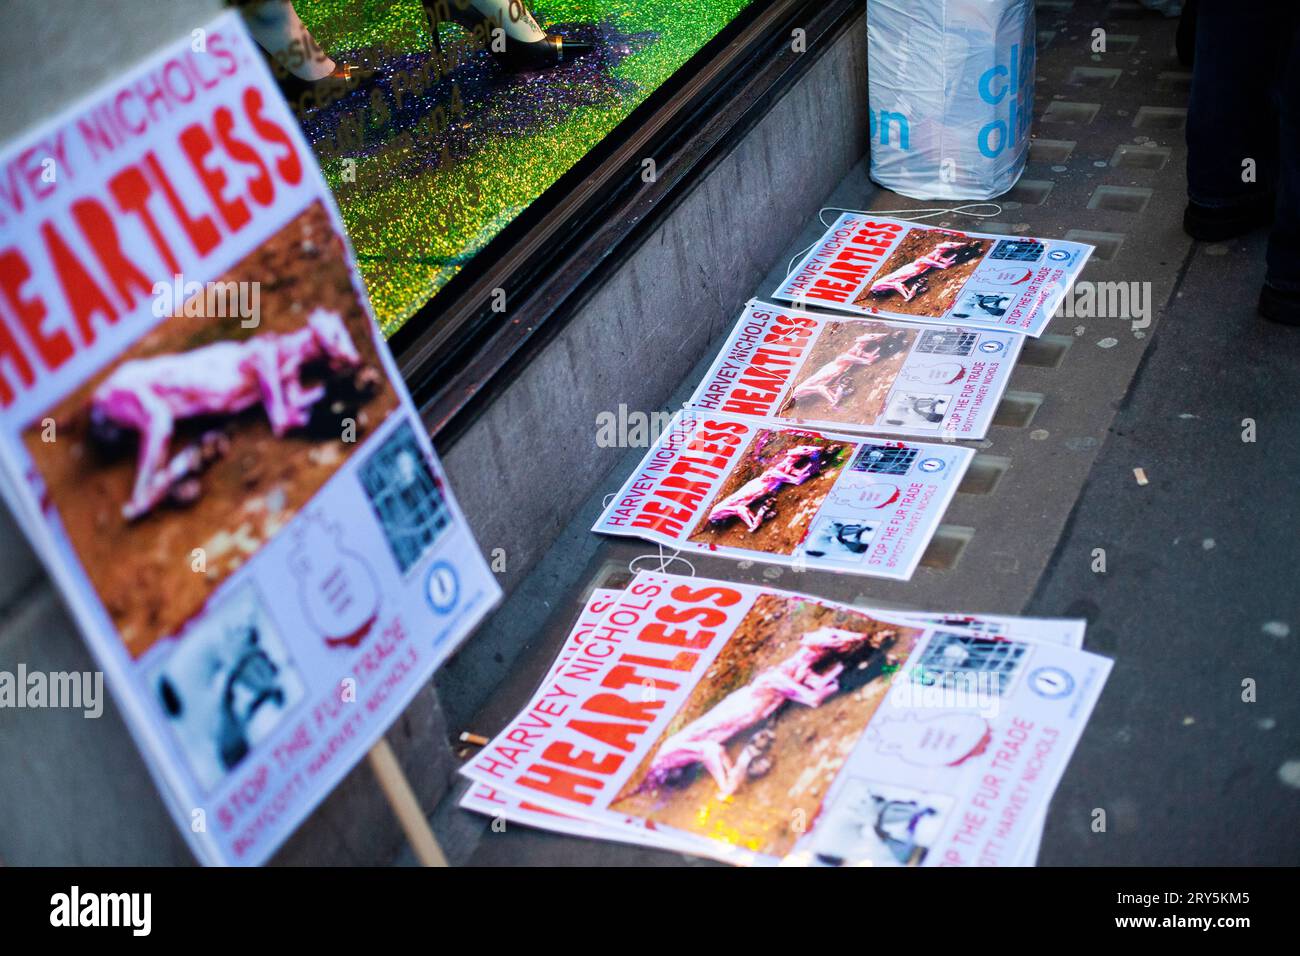 Manifestation anti fourrure des droits des animaux devant Harvey Nichols Londres 30 novembre 2013 - affiches Banque D'Images